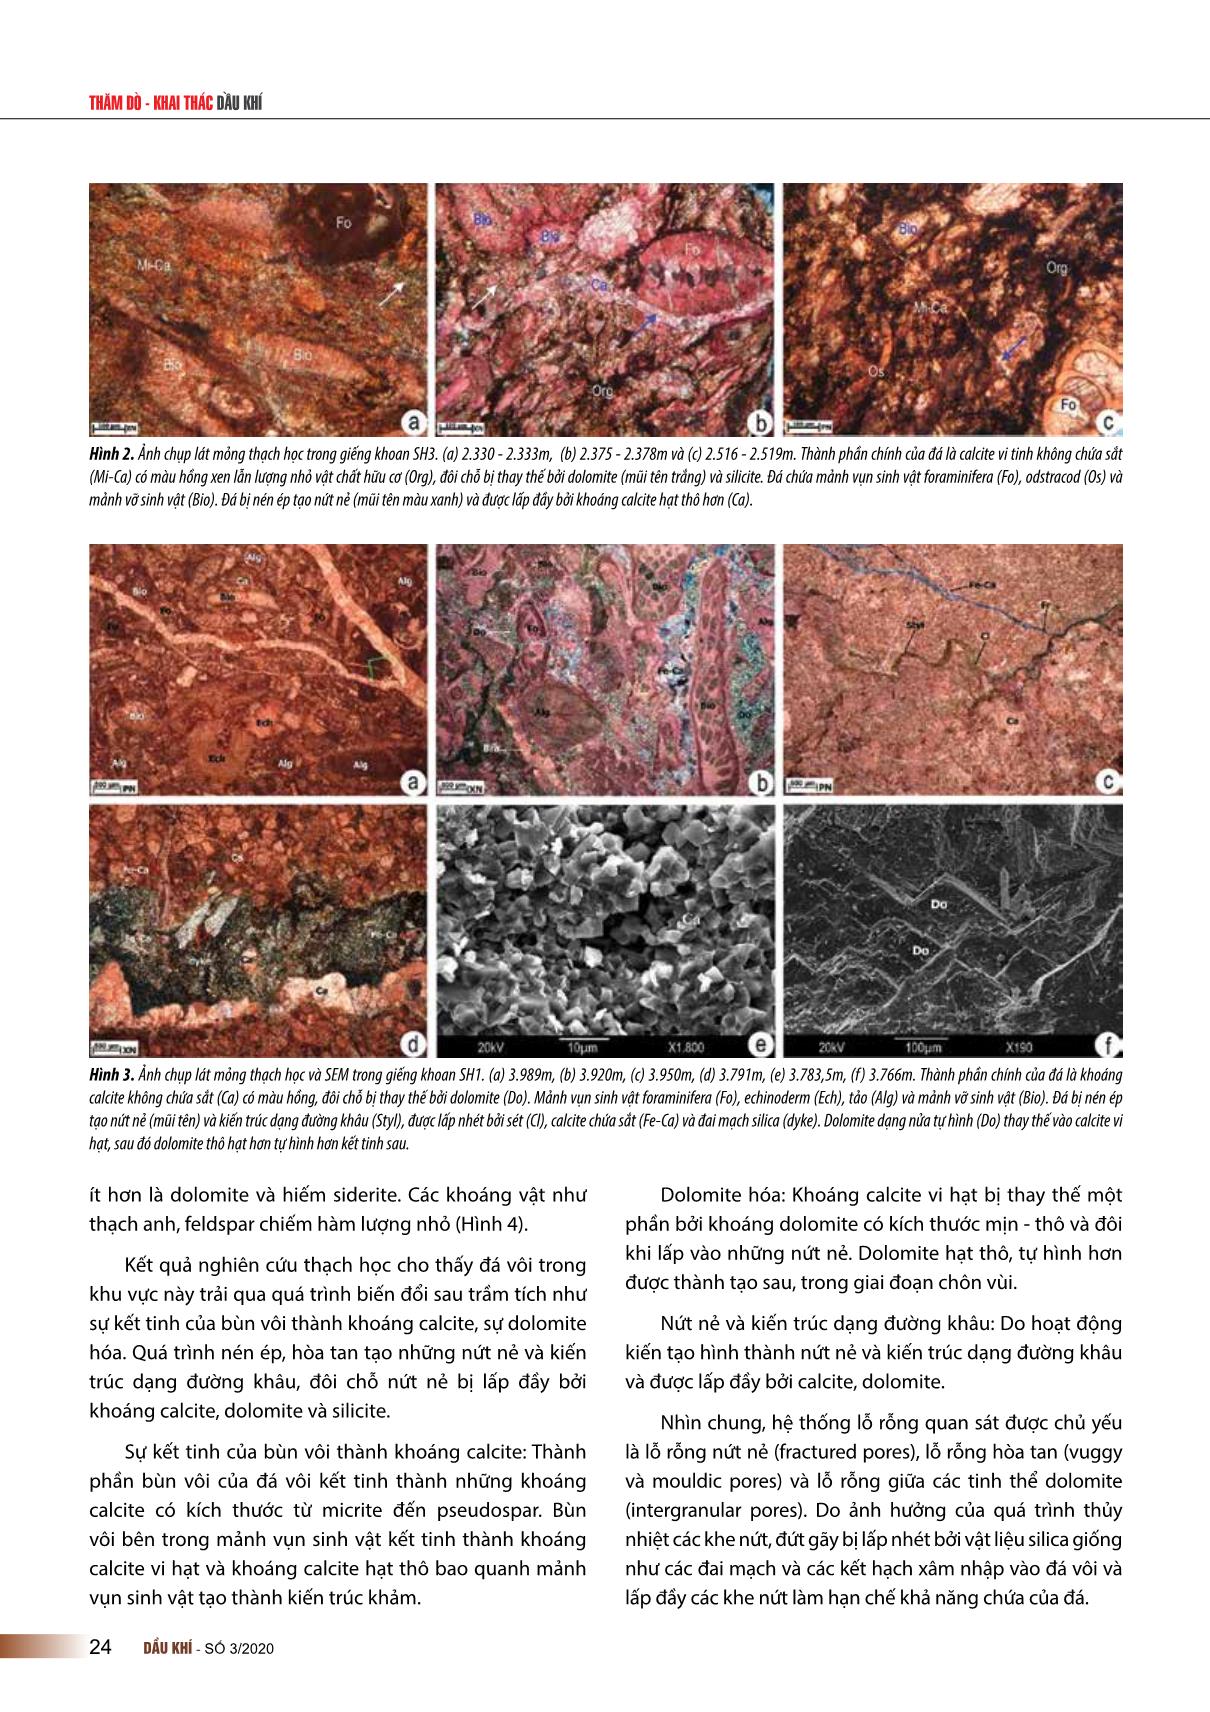 Đặc điểm thạch học và sự phân bố của trùng lỗ trong đá vôi permian phía nam lô 106, bể sông Hồng trang 3